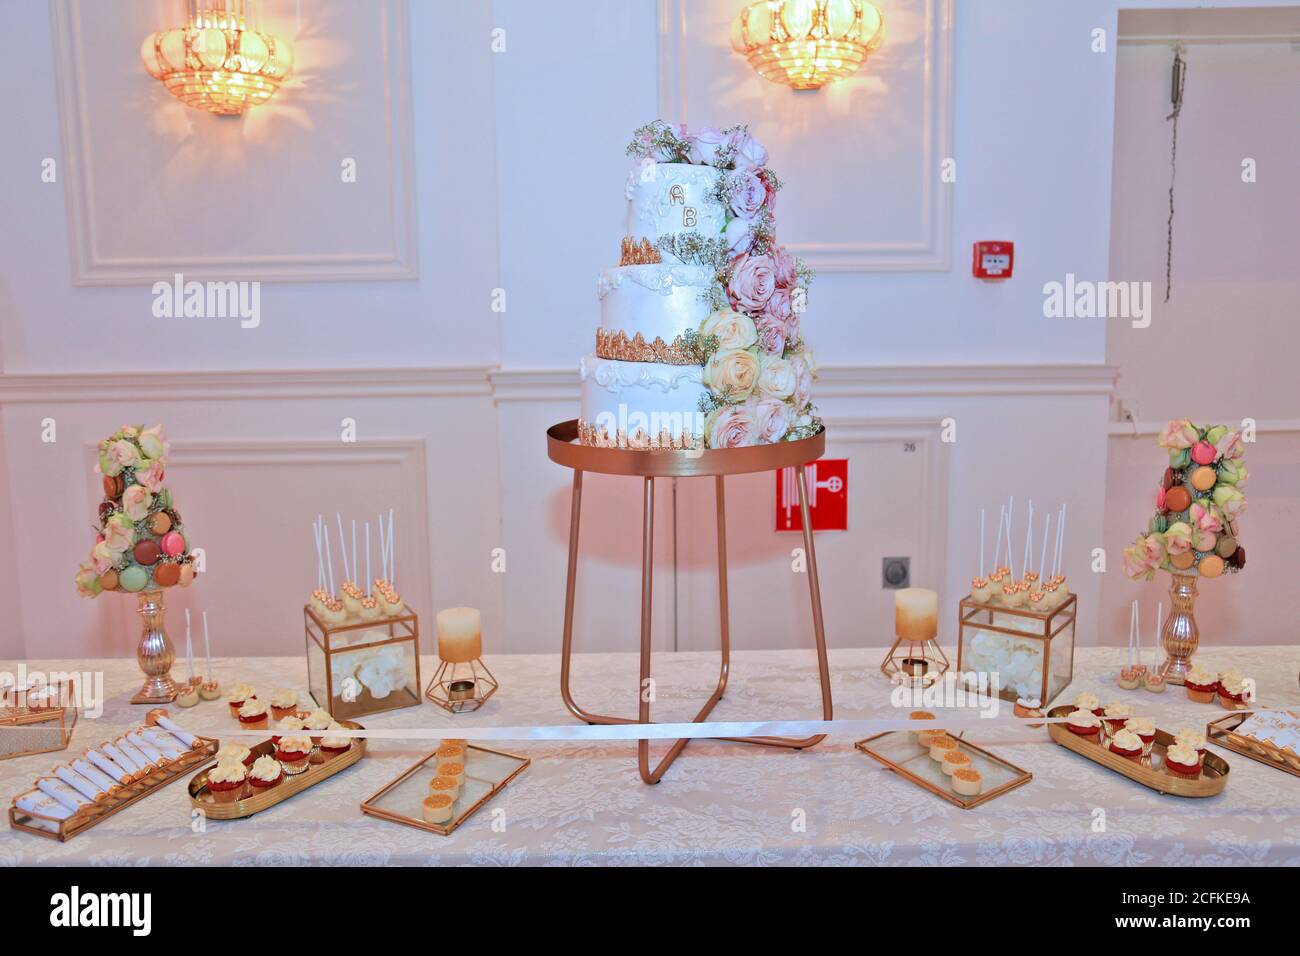 Desserttisch für eine Party, Beautiflu Hochzeitstorte auf Hochzeitsfeier Nachts Stockfoto